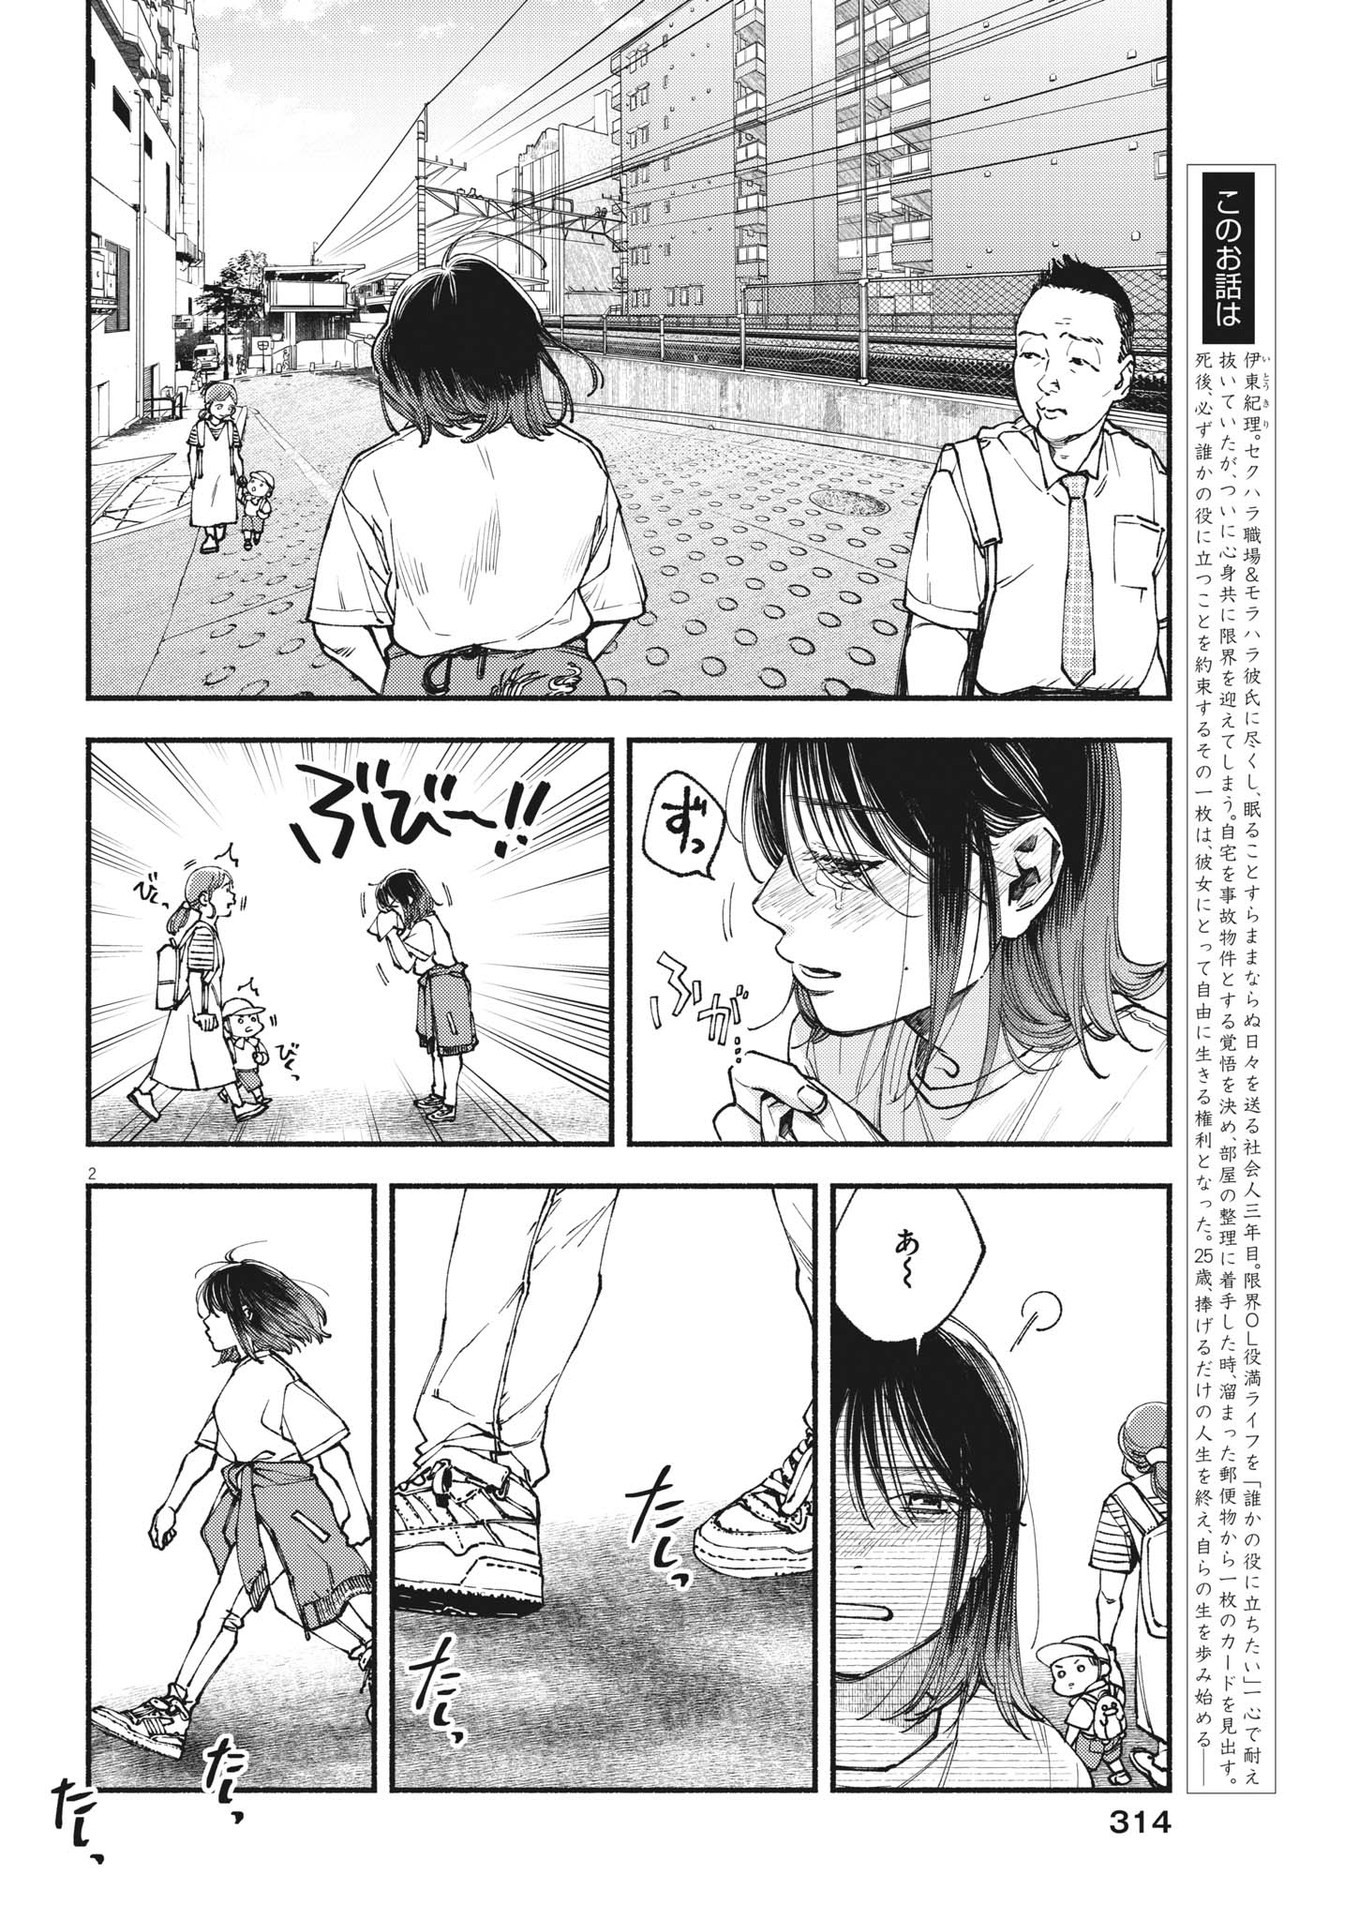 Konoyo wa Tatakau Kachi ga Aru  - Chapter 19 - Page 2